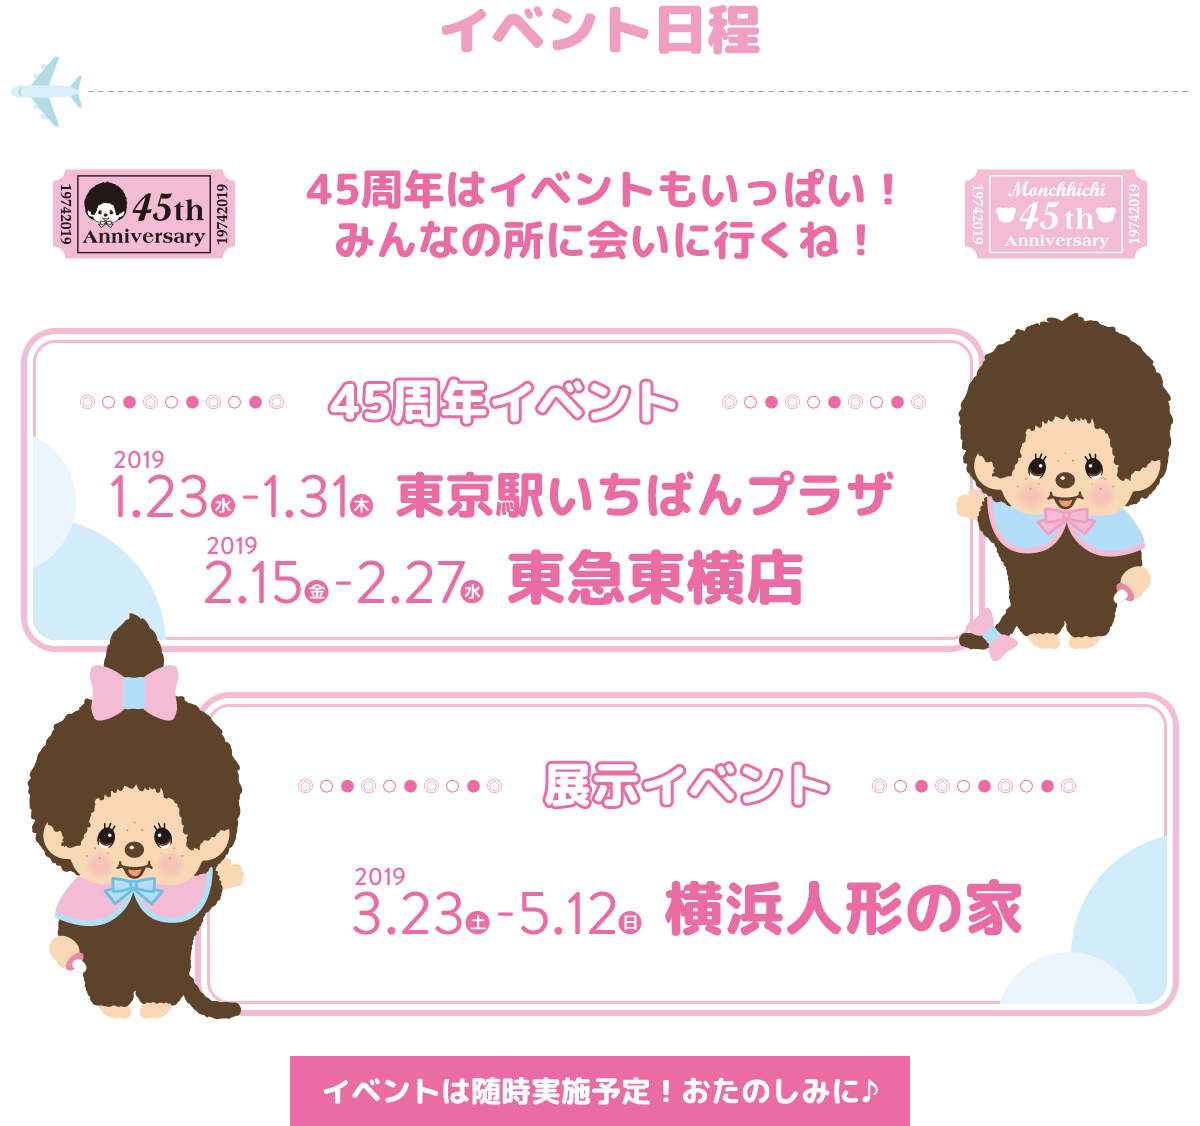 イベント日程。45周年はイベントもいっぱい！　みんなの所に会いに行くね！　45周年イベント：「2019年1月23日（水）～1月31日（木）東京駅いちばんプラザ」、「2019年2月15日（金）～2月27日（水）東急東横店」。展示イベント：2019年3月23日（土）～5月12日（日）横浜人形の家。イベントは随時実施予定！おたのしみに♪